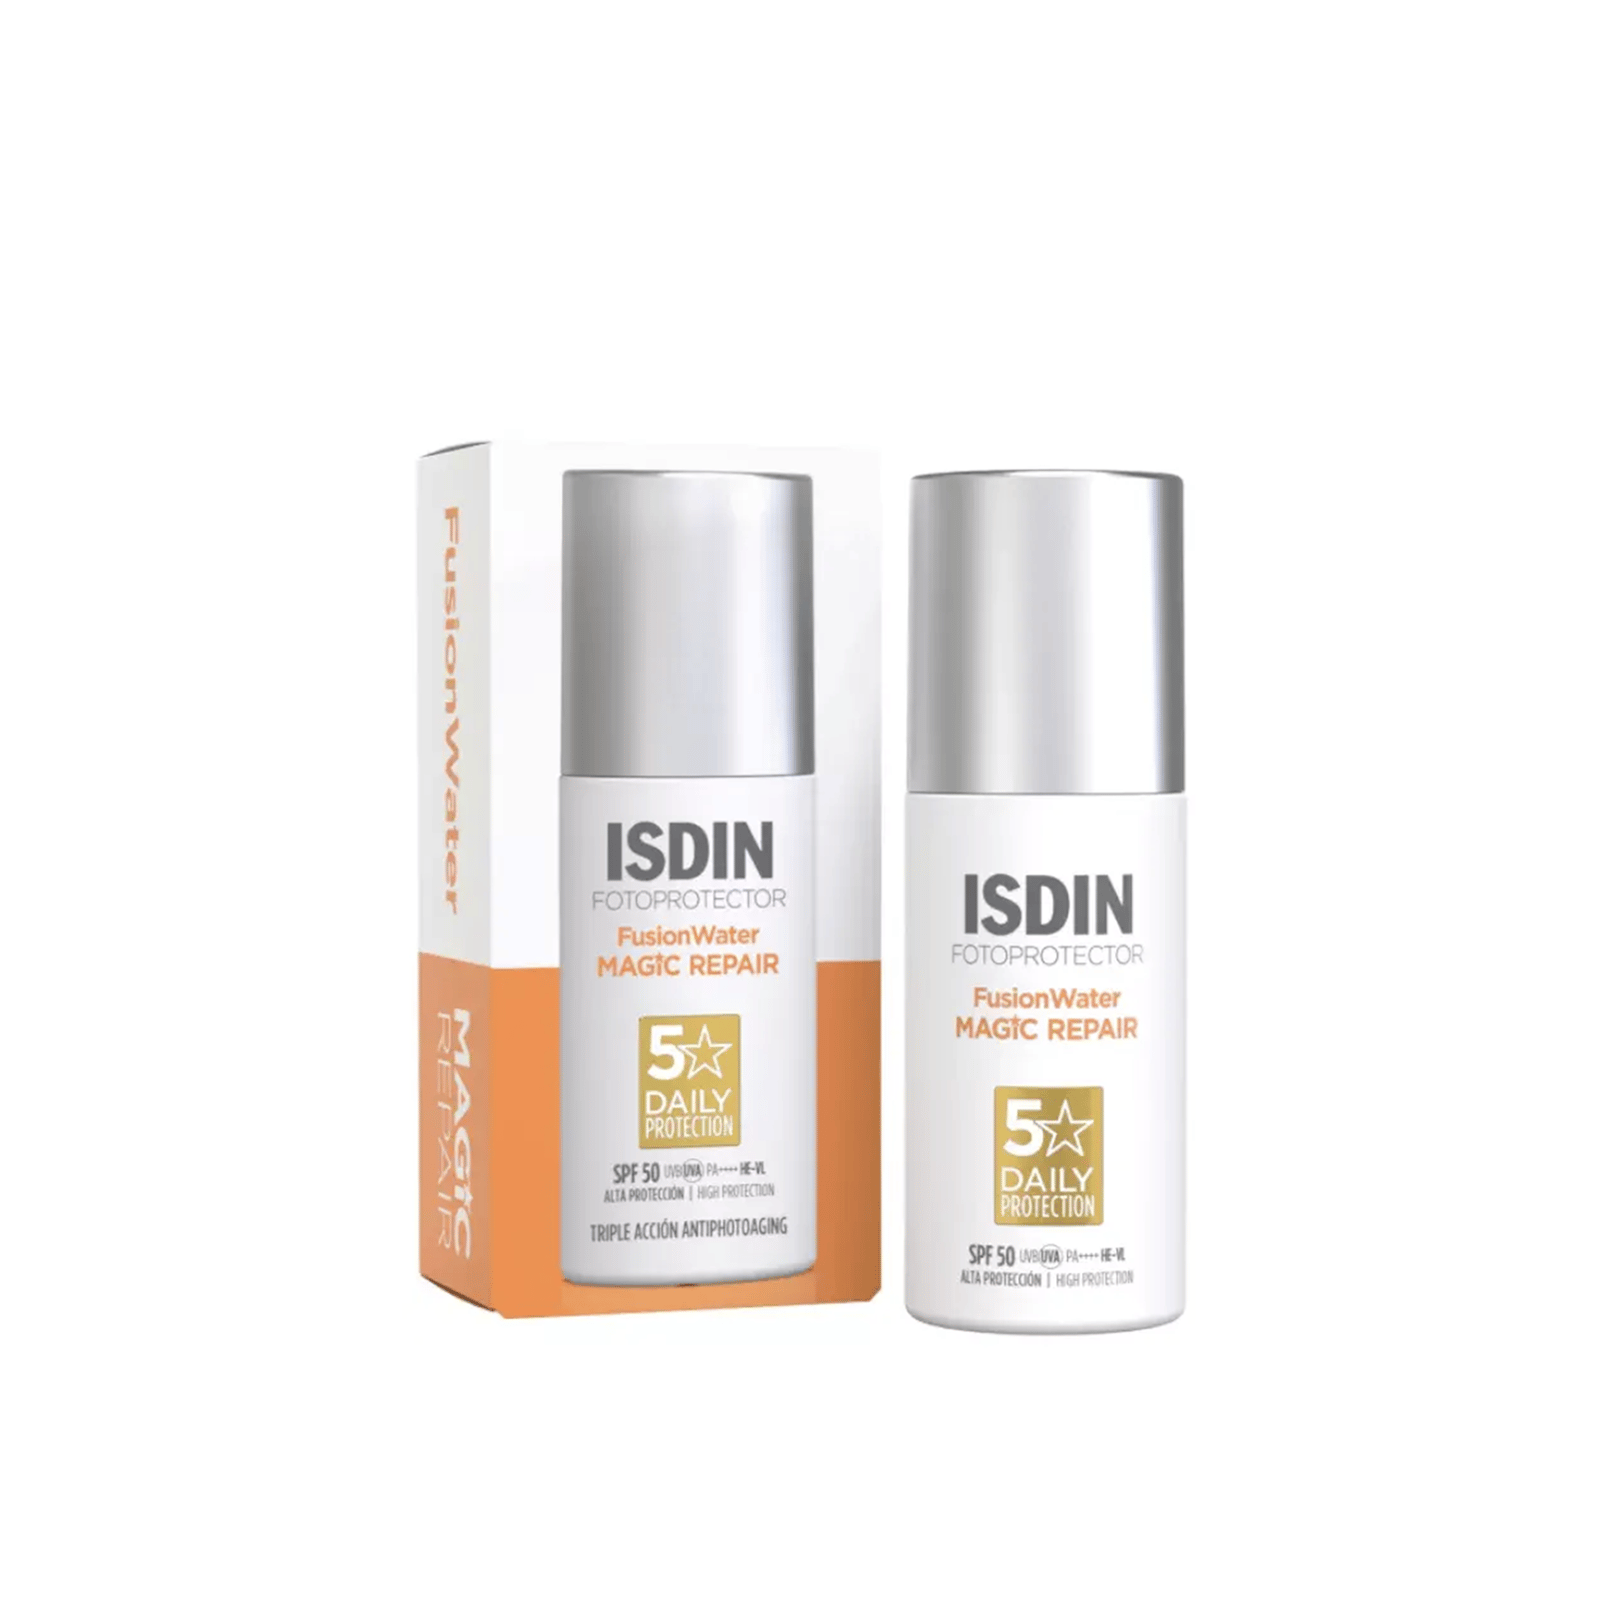 ISDIN Fotoprotector Fusion Water Magic Repair Sunscreen SPF50